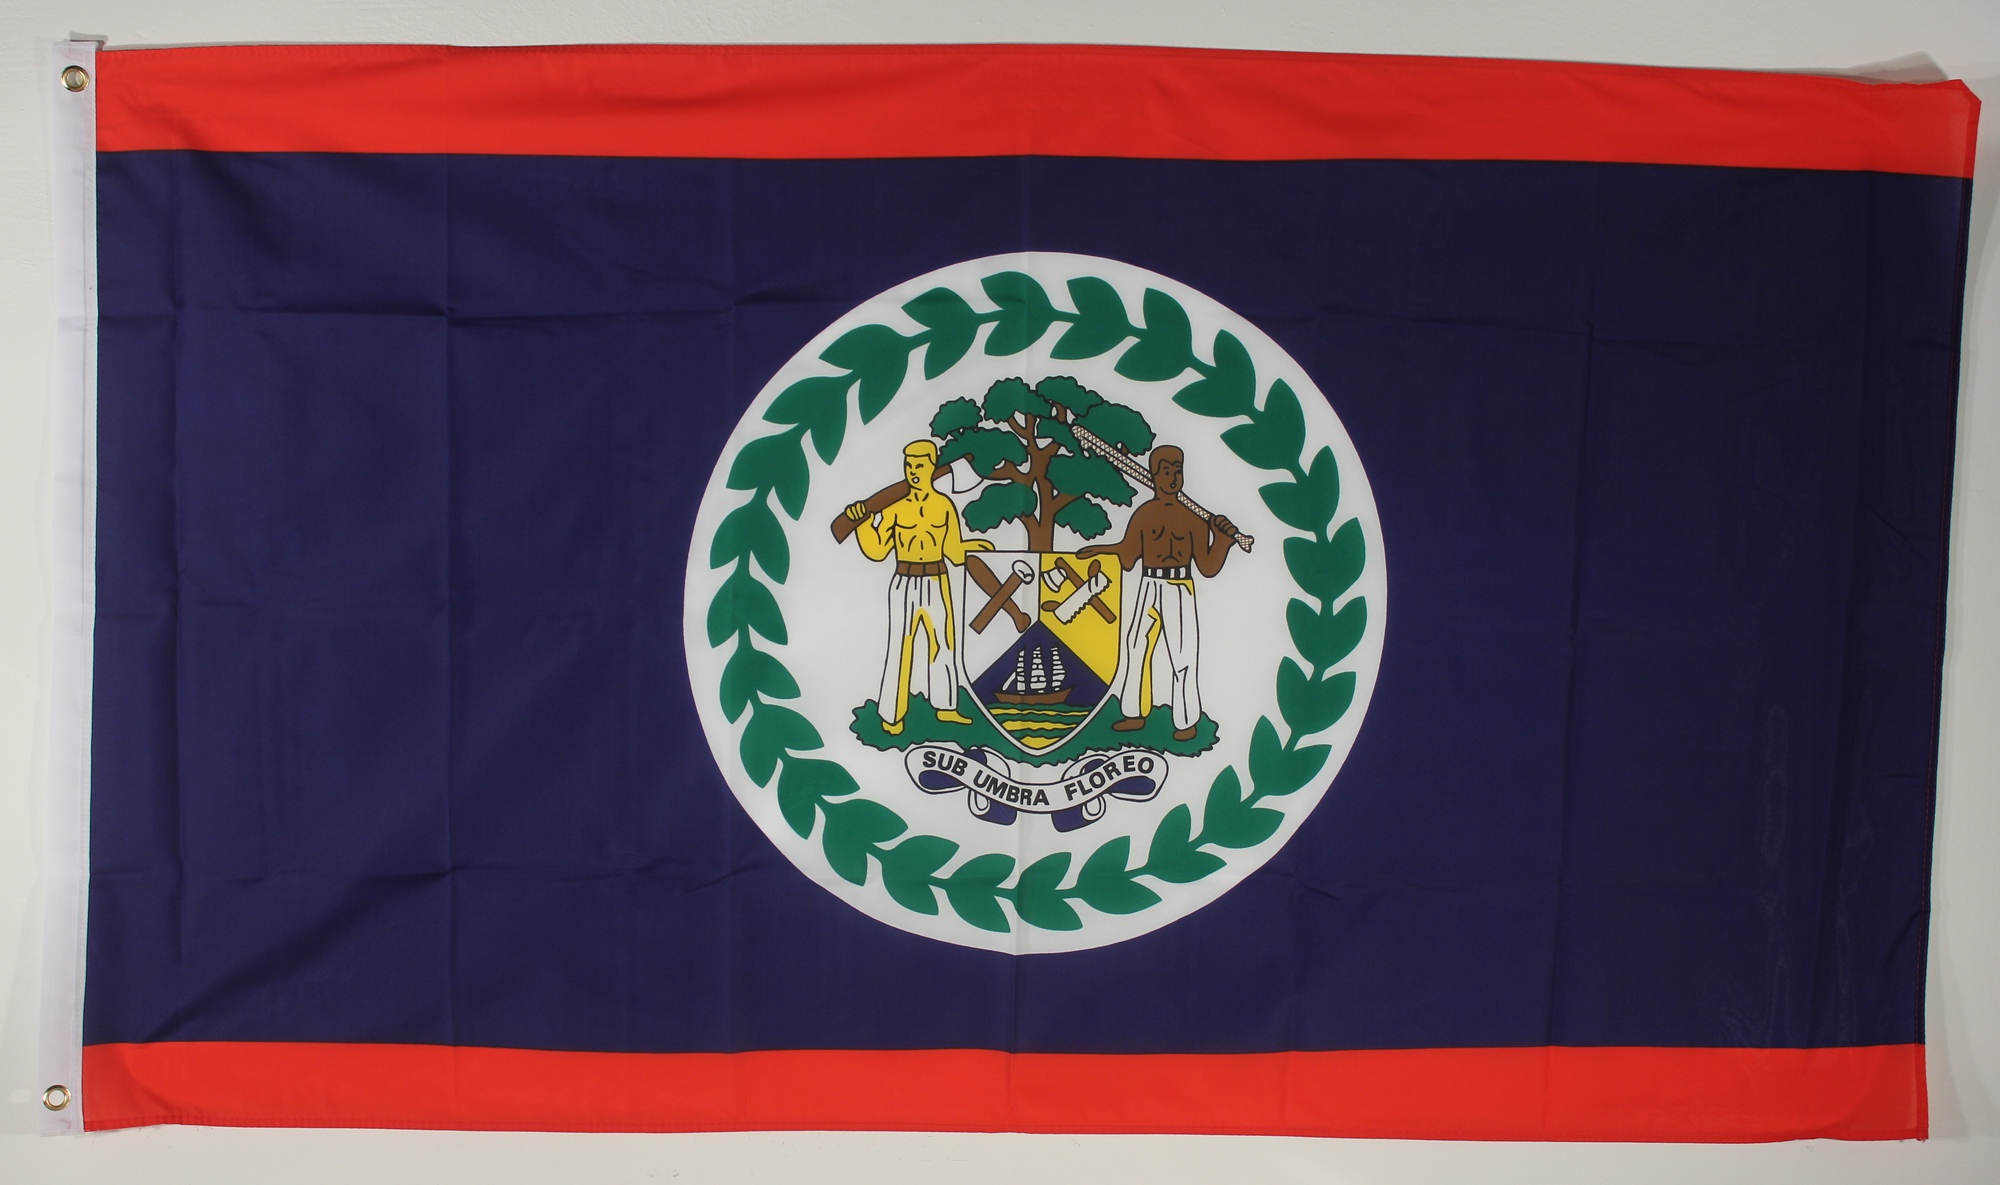 Fahne Belize 30 x 45 cm Flagge 